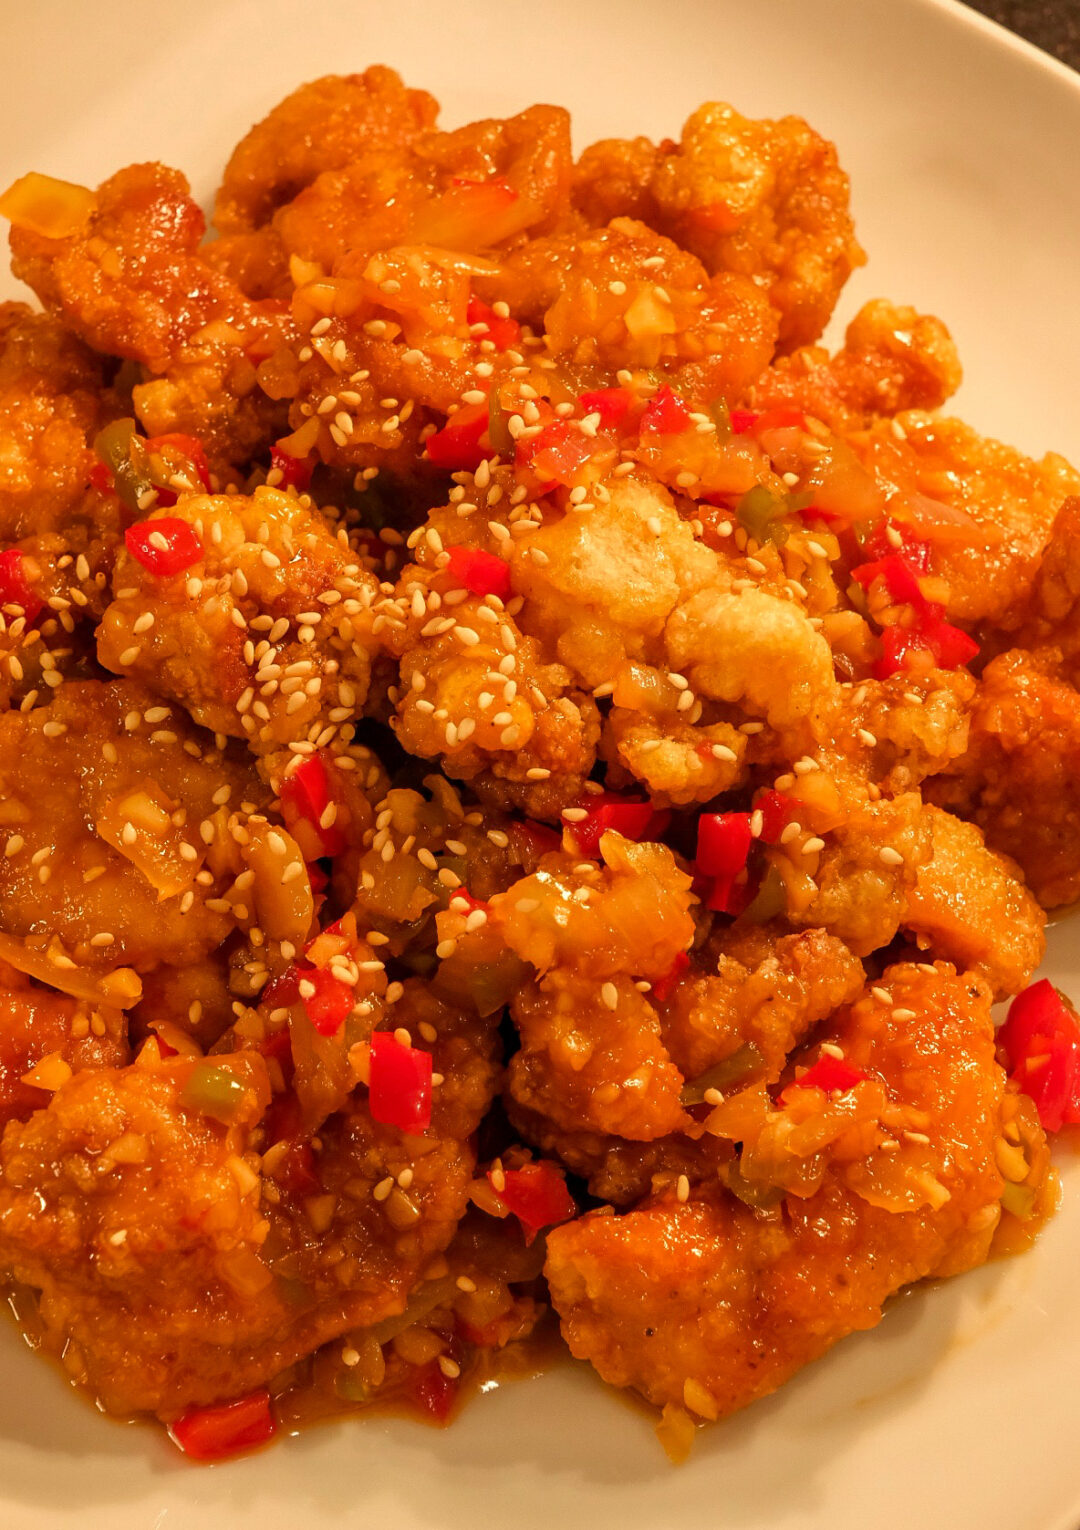 Kkanpunggi (Korean Spicy Garlic Fried Chicken)